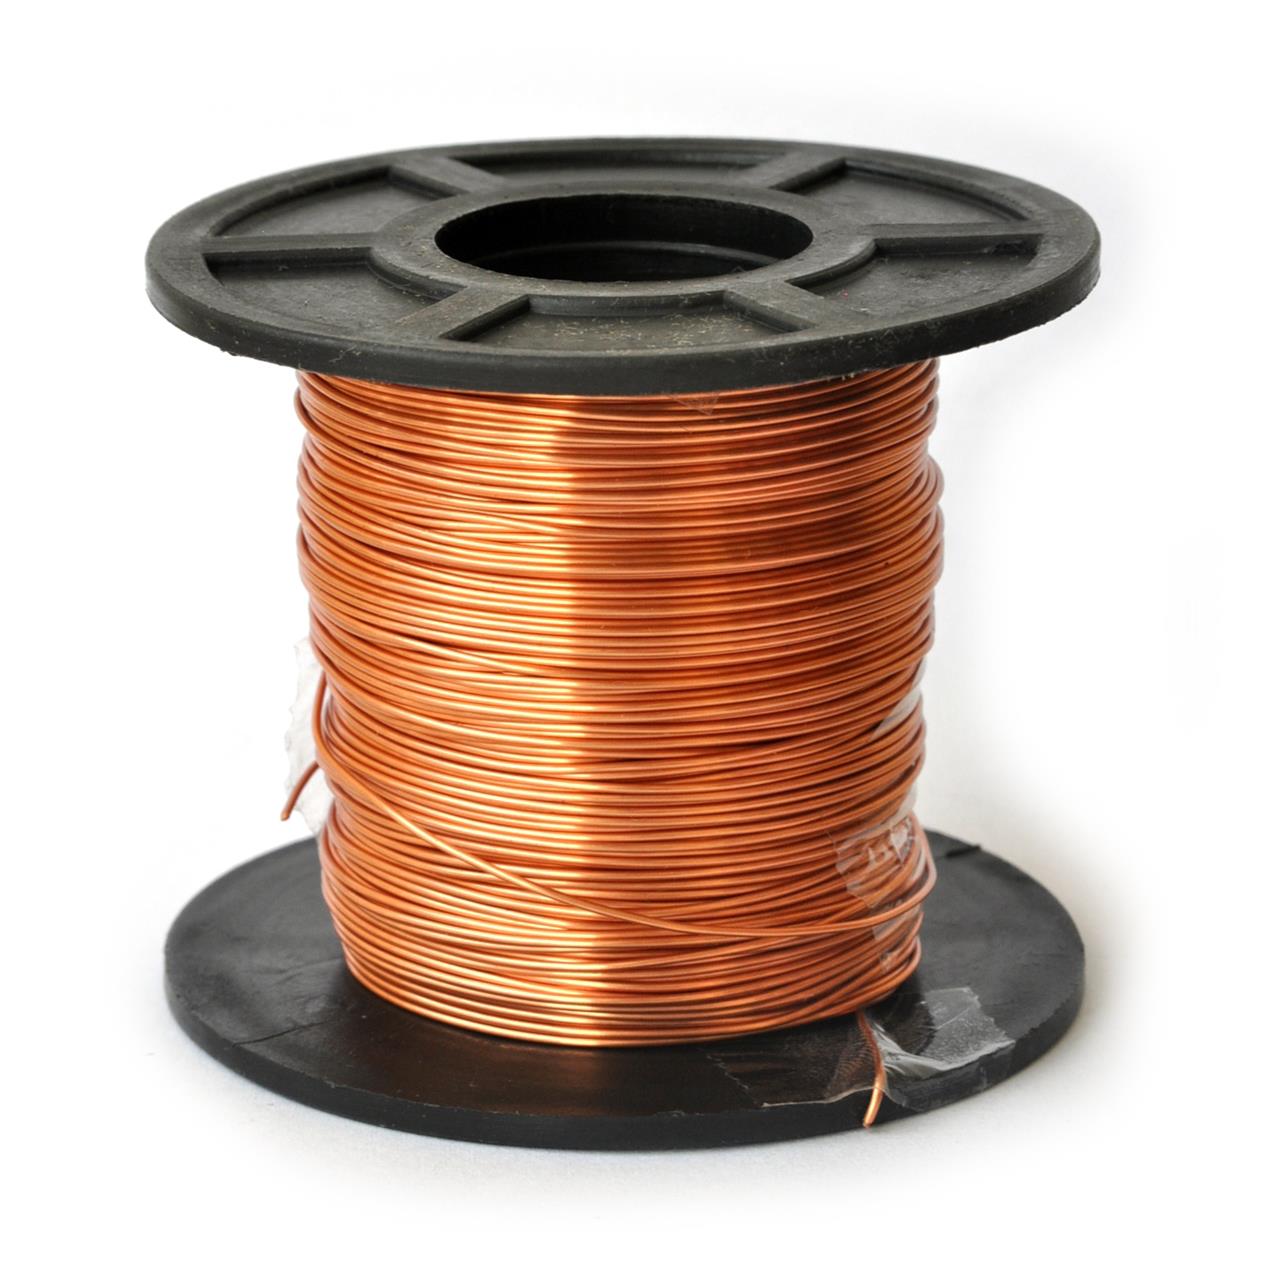 Fios de cobre esmaltados para bobinas, transformadores e indutores - Fio 22 AWG 250g